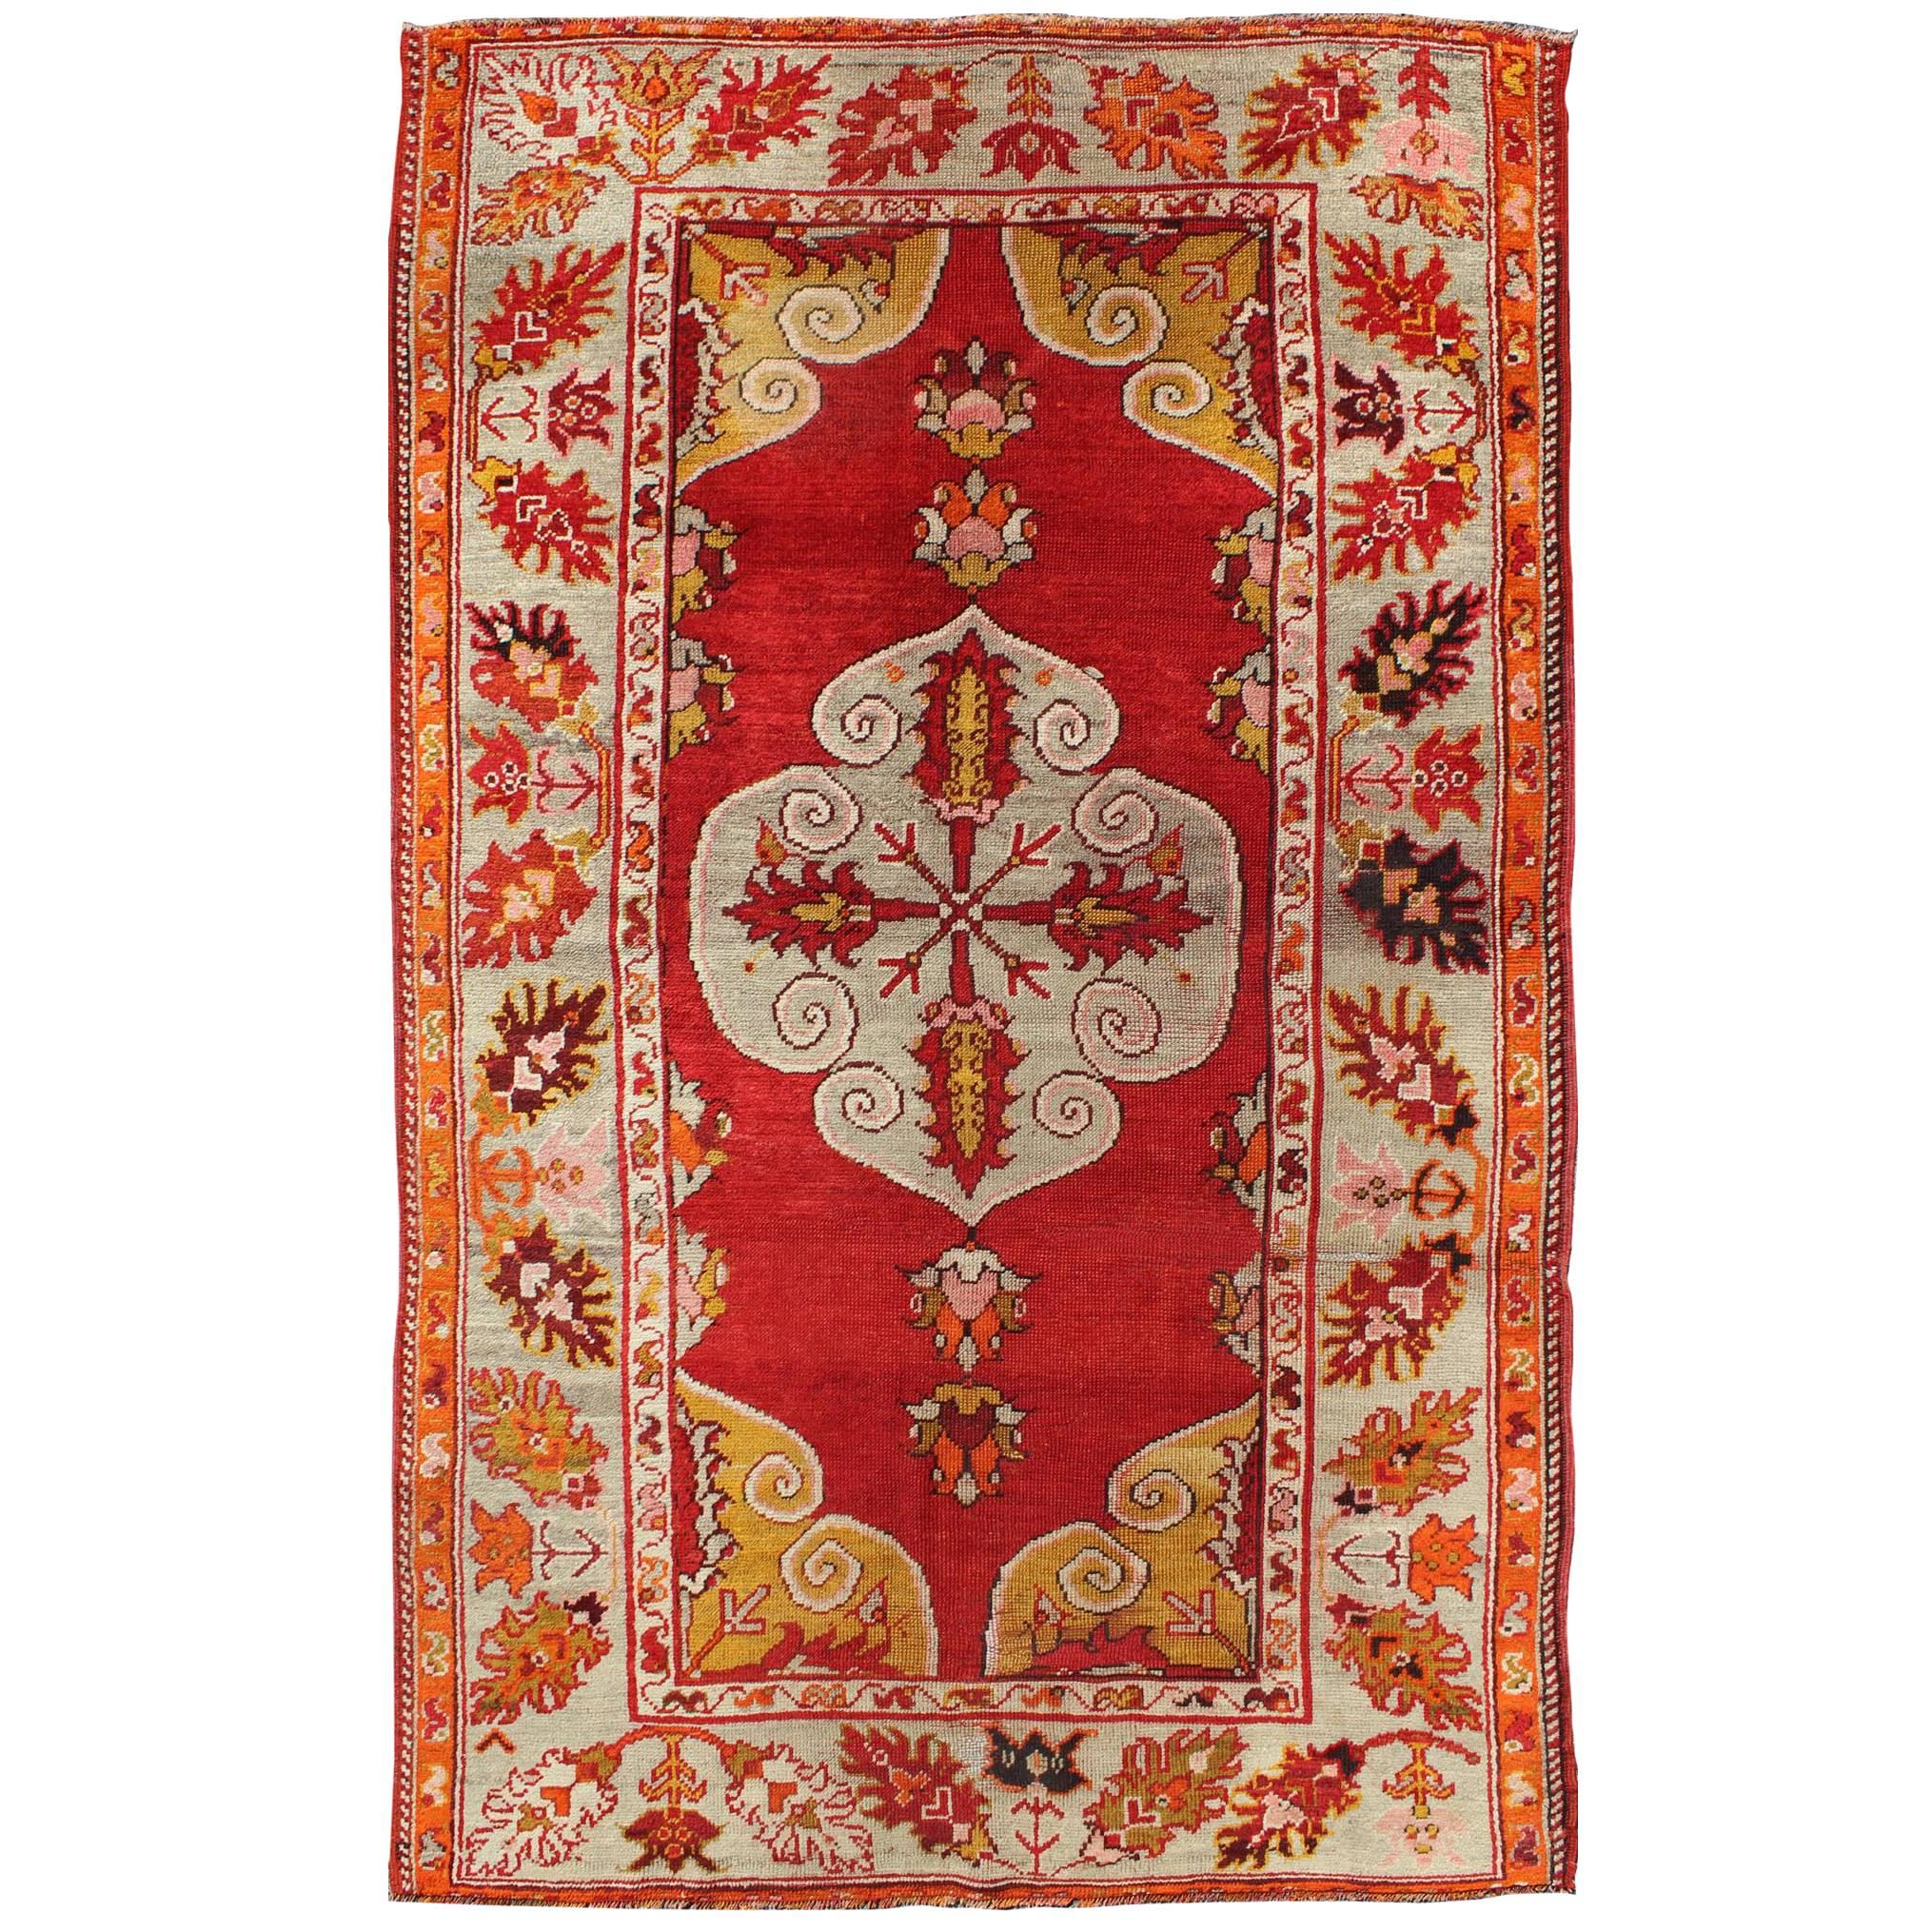 Antiker türkischer Oushak-Teppich mit Medaillon in der Mitte aus Medaillon mit rotem Grund und mehreren Farben